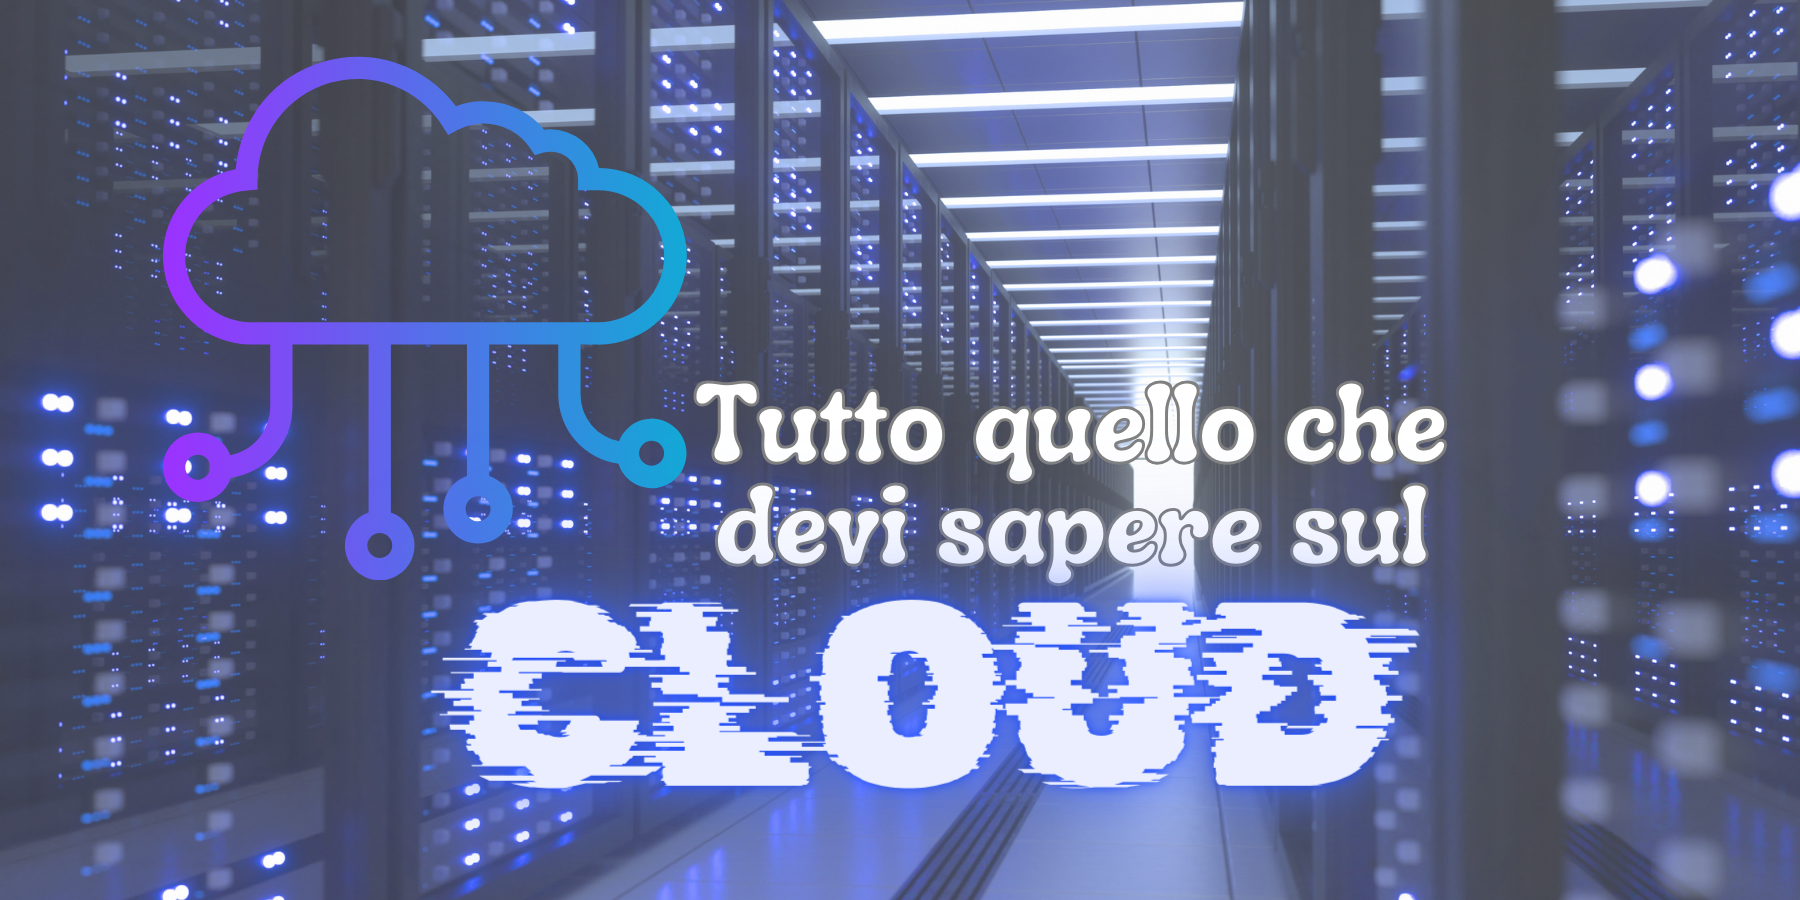 Tutto quello che devi sapere sul cloud: Guida completa per comprendere e sfruttare al meglio le potenzialità del cloud computing